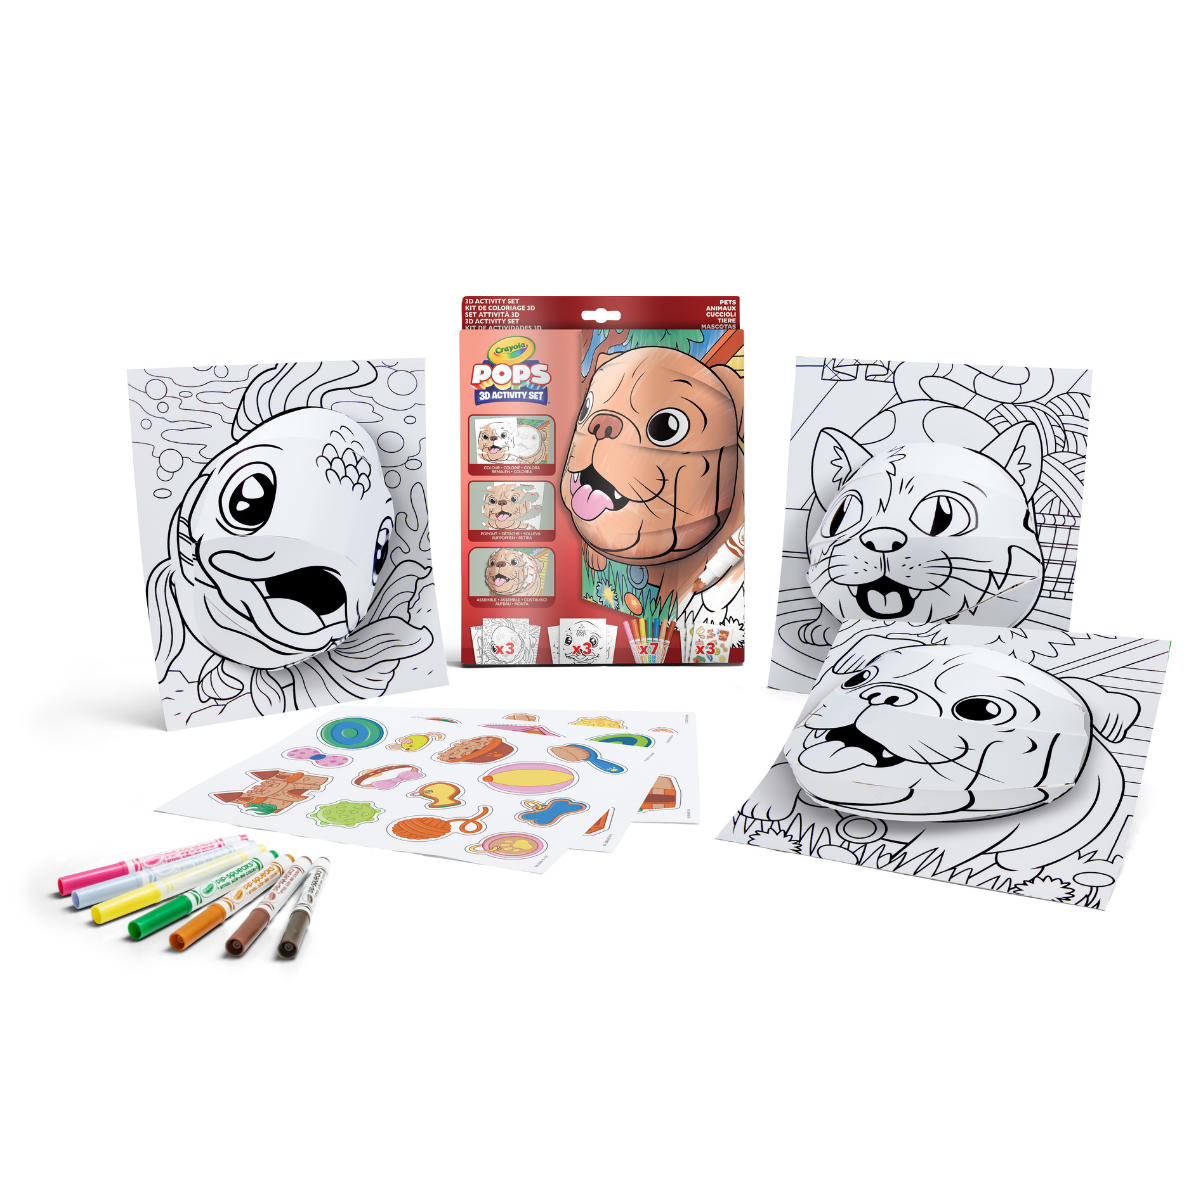 Crayola pops 3d activity set cuccioli - 3 soggetti - colora e crea disegni tridimensionali - CRAYOLA